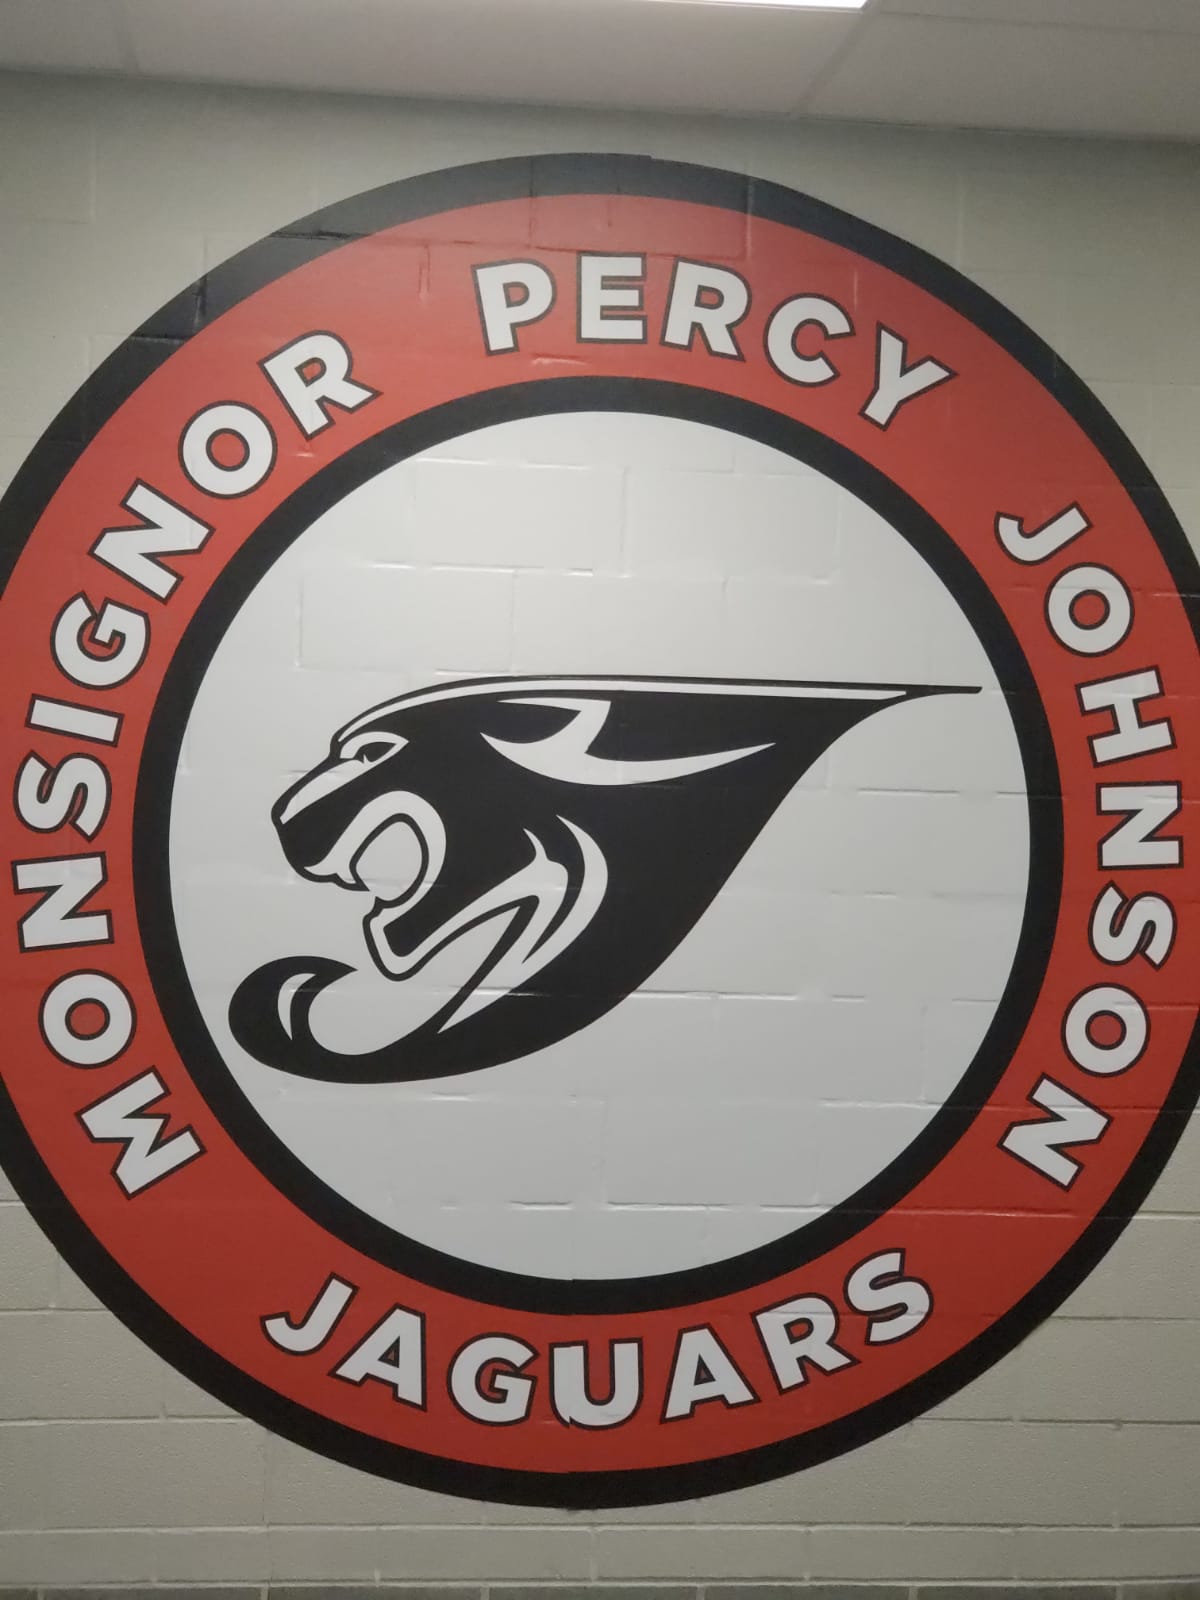 MPJ Jaguars logo on wall